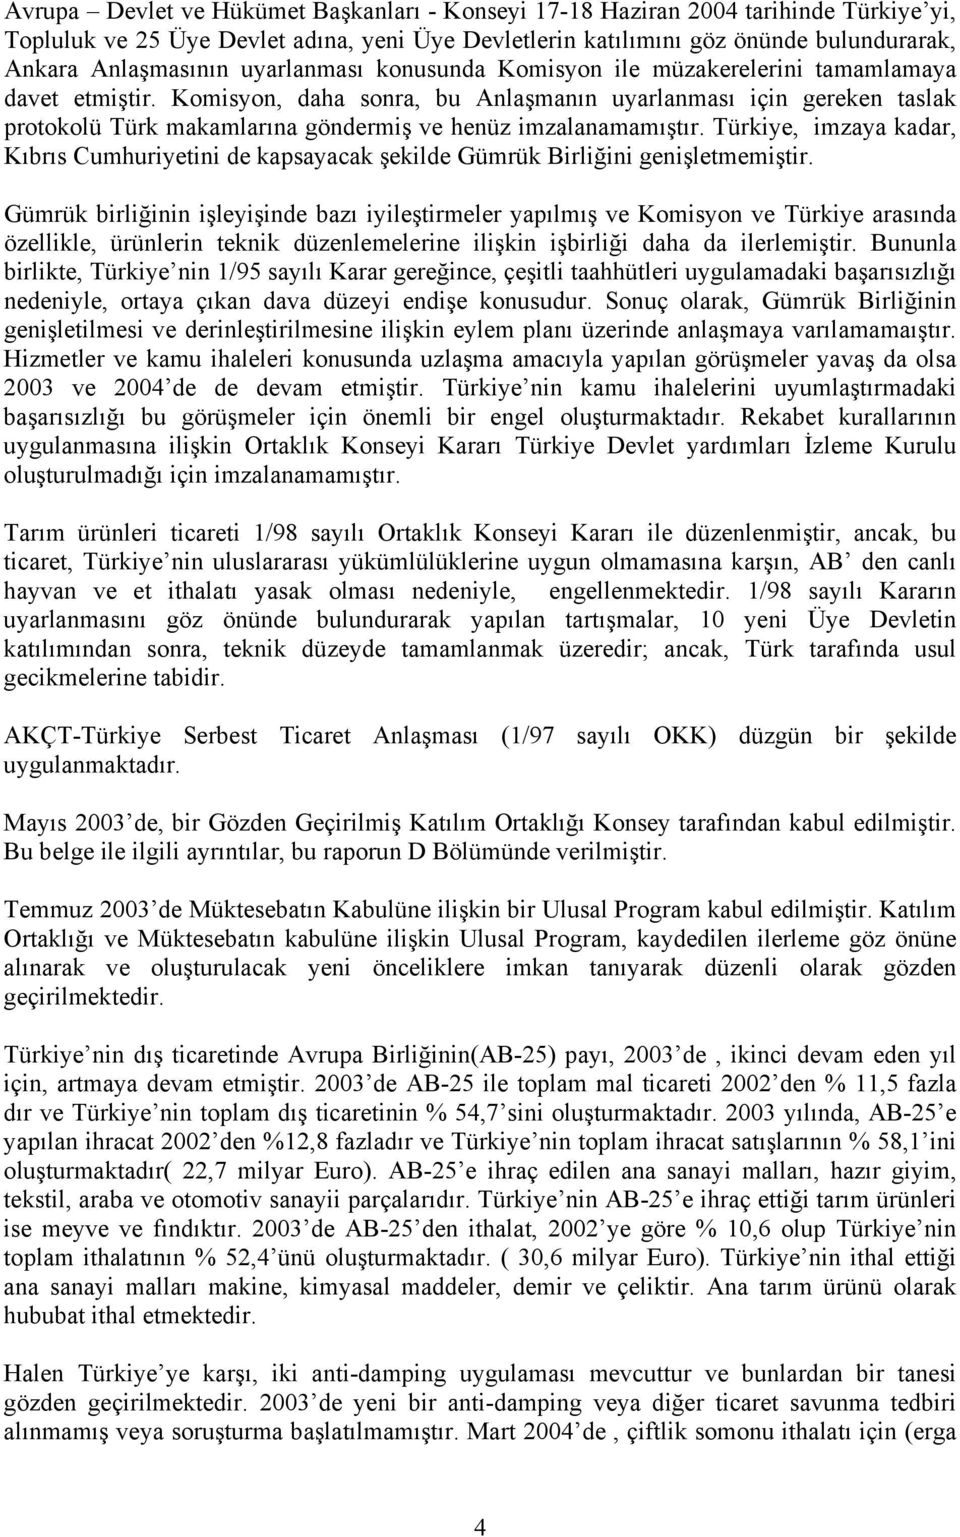 Komisyon, daha sonra, bu Anlaşmanın uyarlanması için gereken taslak protokolü Türk makamlarına göndermiş ve henüz imzalanamamıştır.